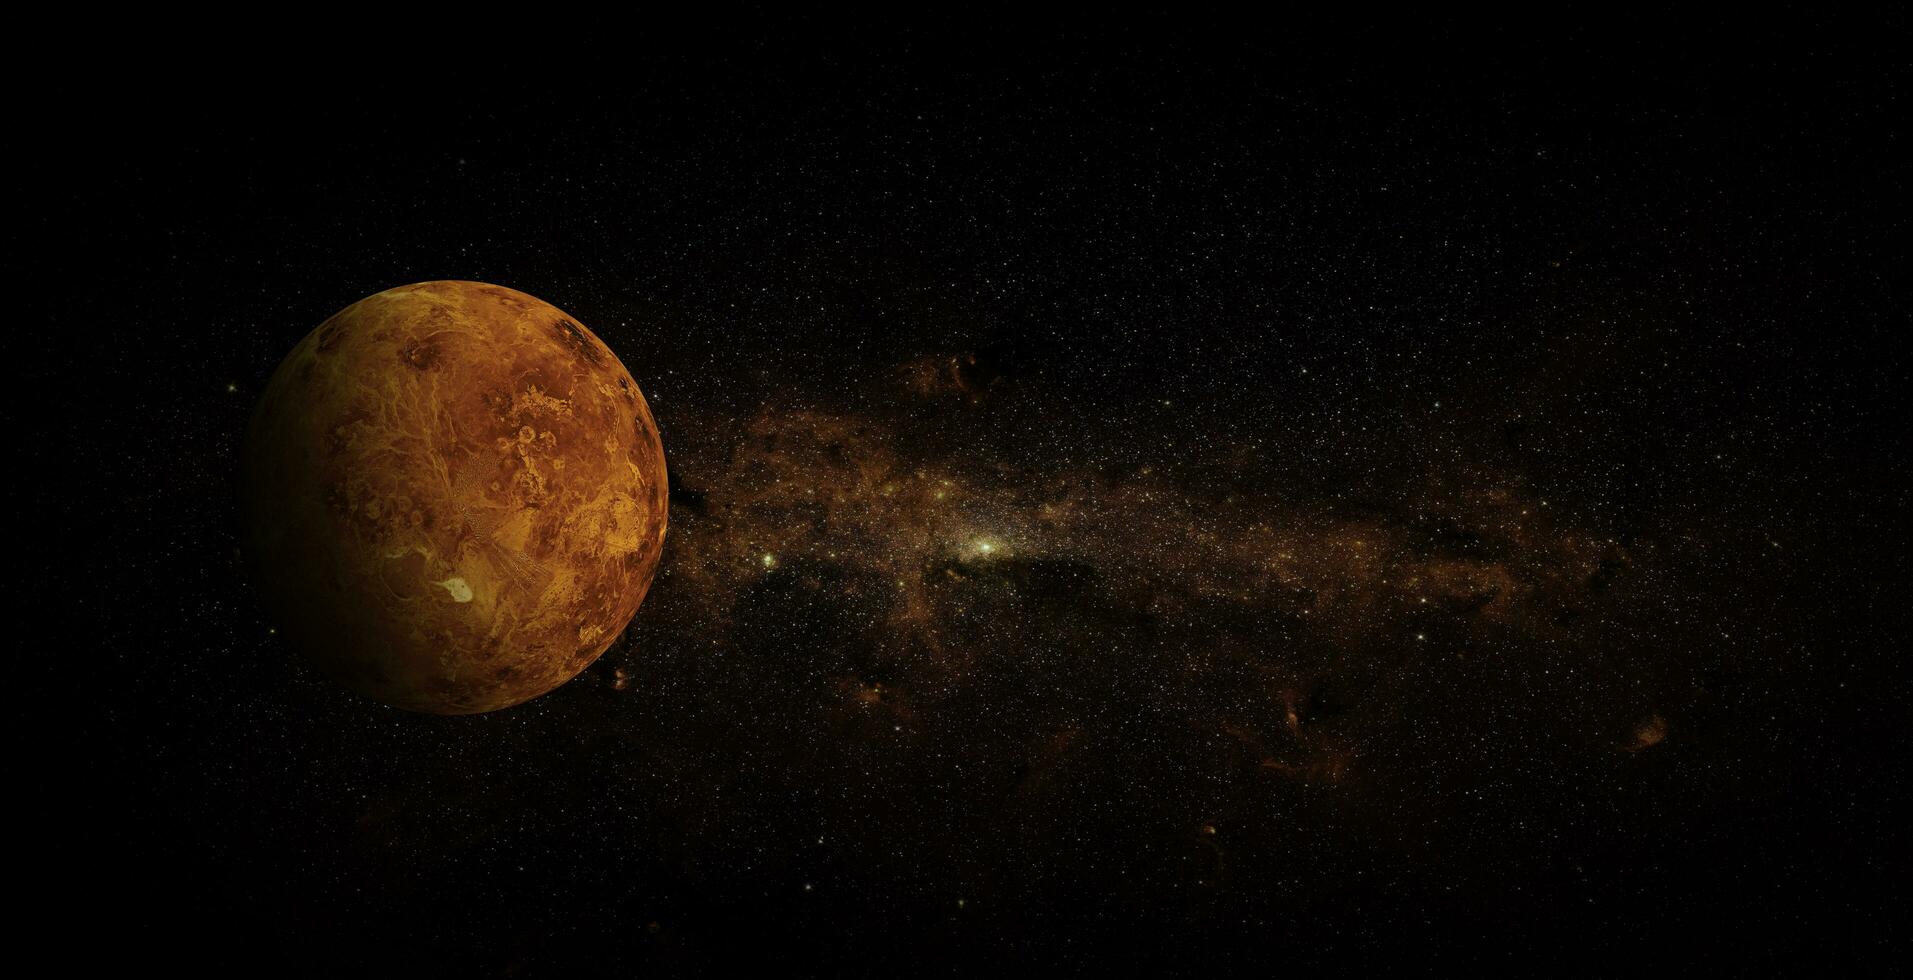 Vênus no fundo do espaço, elementos desta imagem fornecidos pela nasa foto